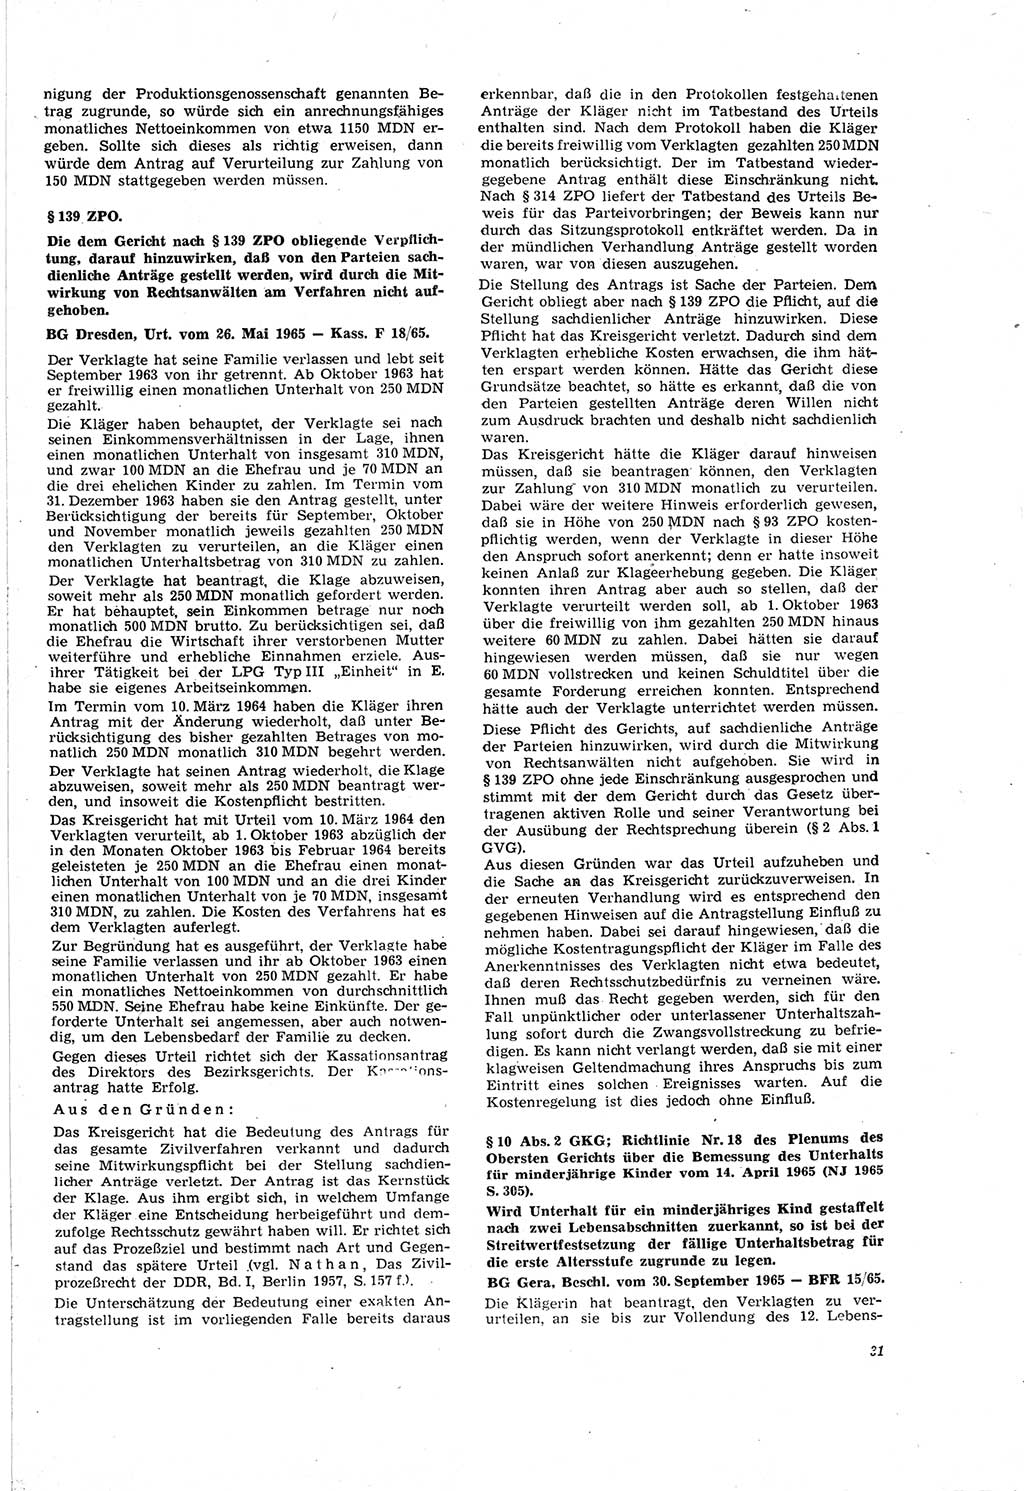 Neue Justiz (NJ), Zeitschrift für Recht und Rechtswissenschaft [Deutsche Demokratische Republik (DDR)], 20. Jahrgang 1966, Seite 31 (NJ DDR 1966, S. 31)